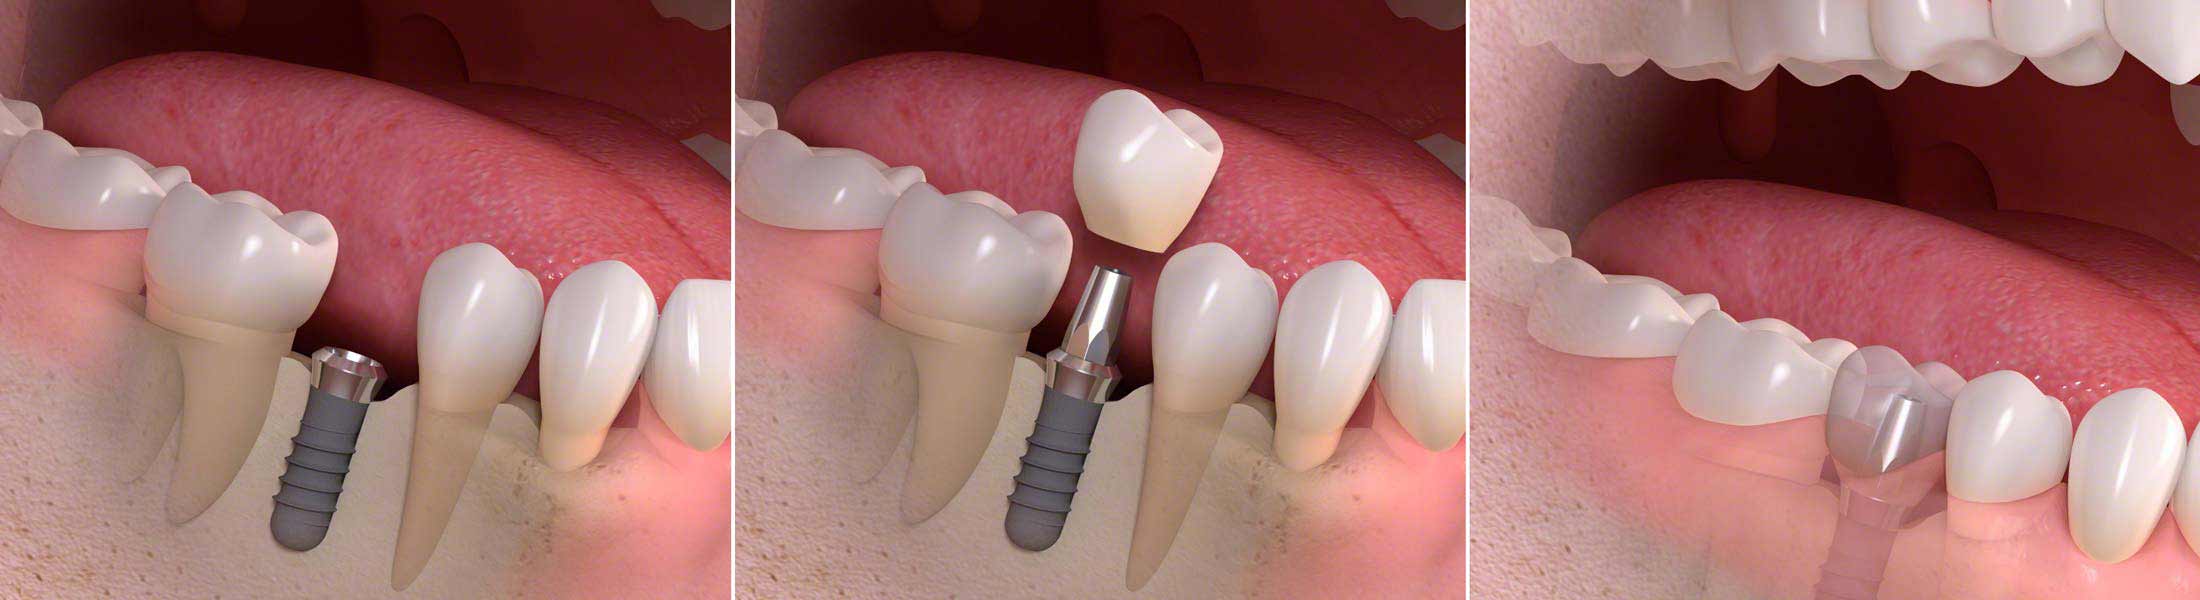 Einsetzten eines einzelnen Zahnimplantats